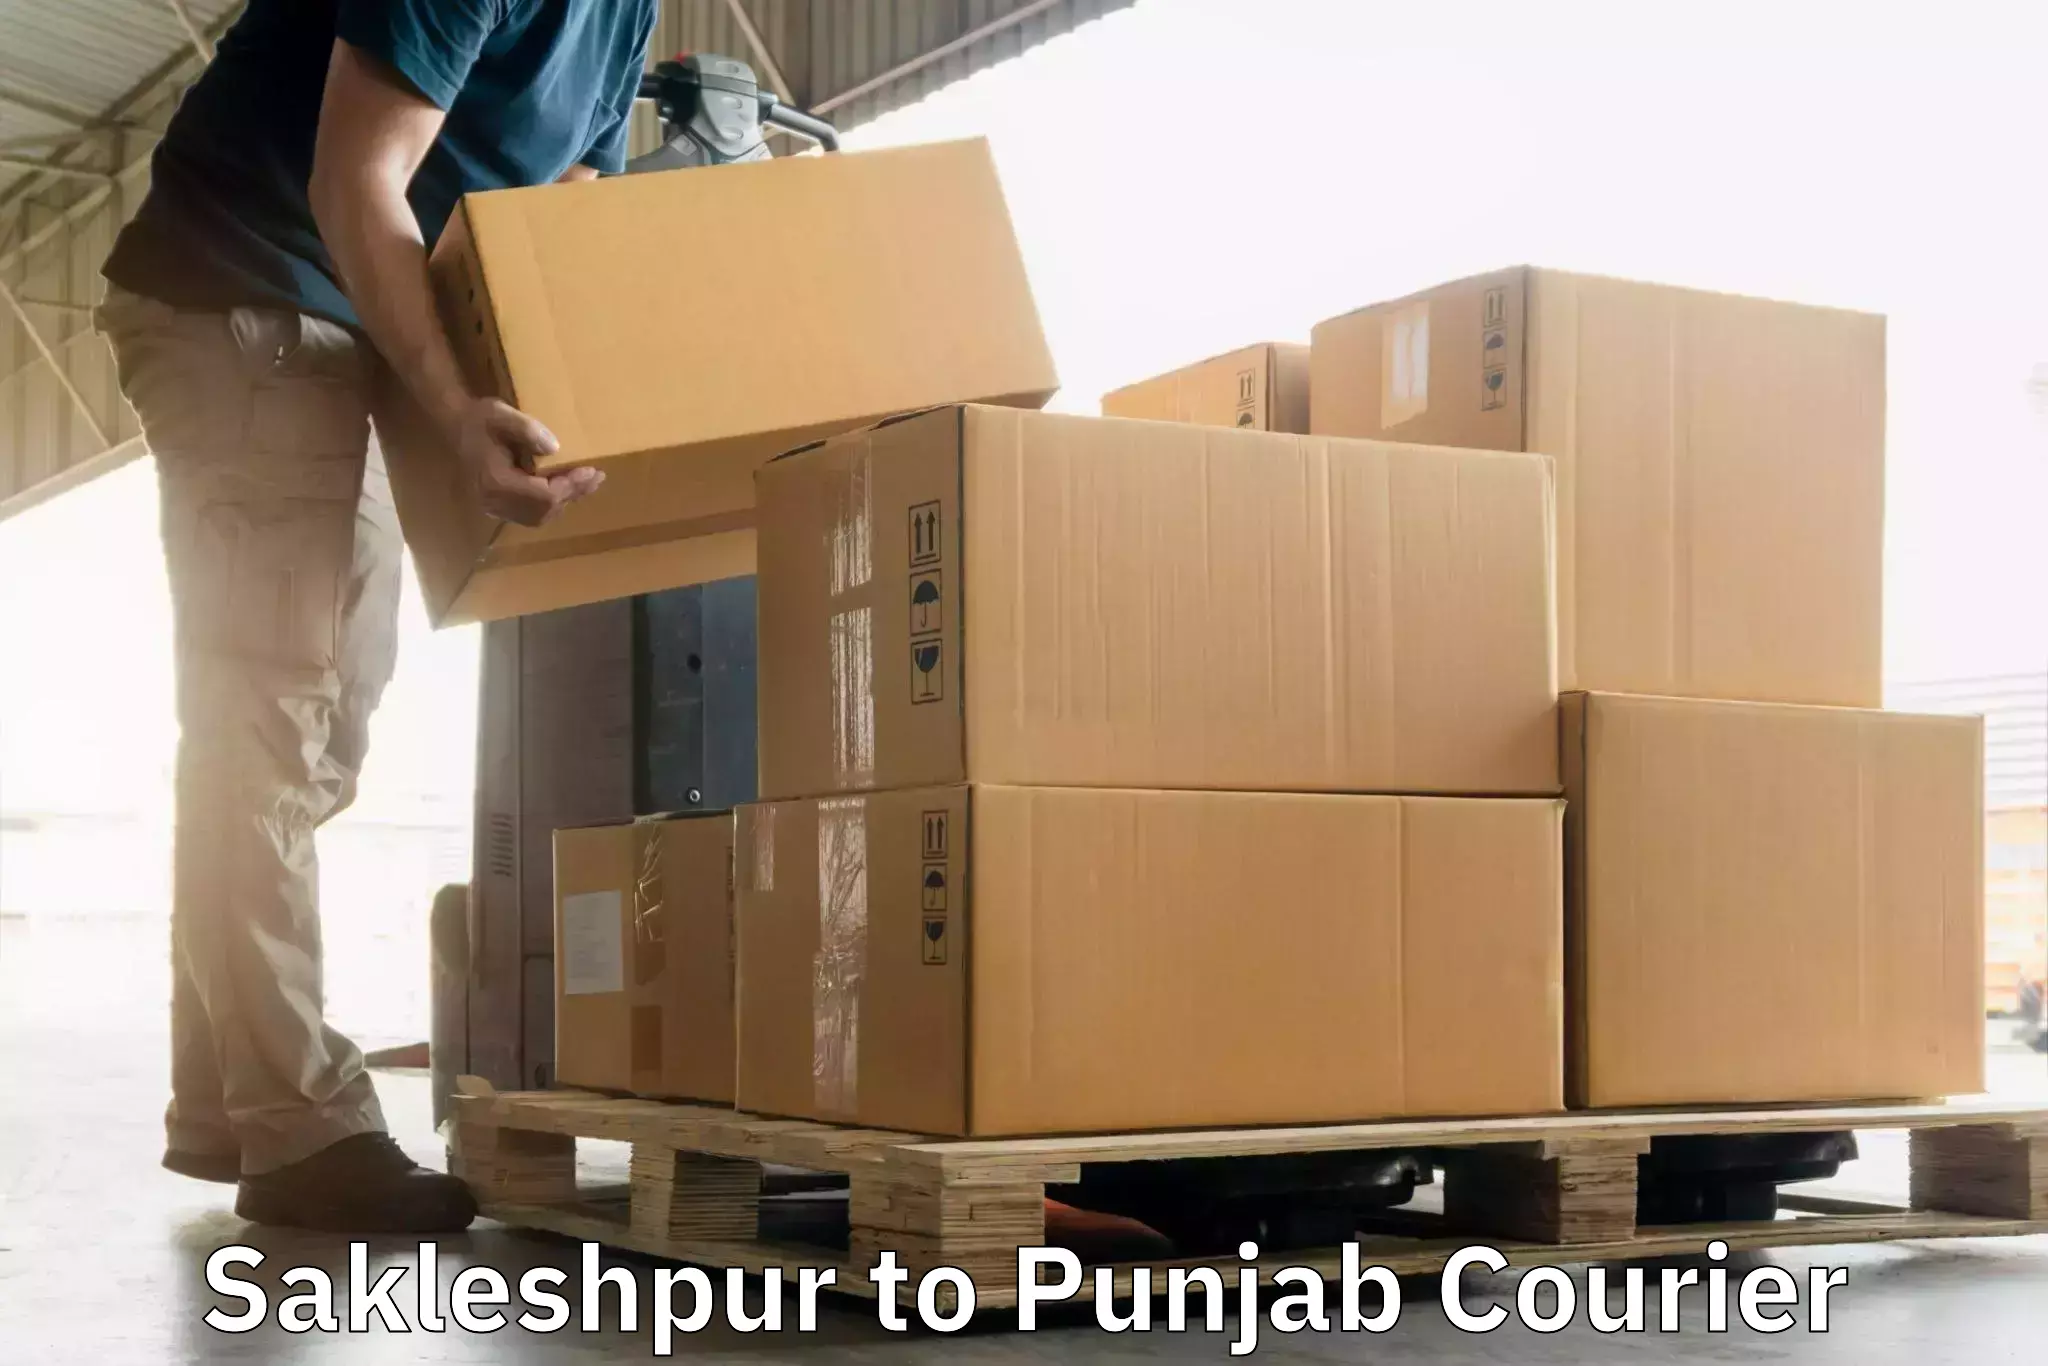 Quick booking process in Sakleshpur to Punjab